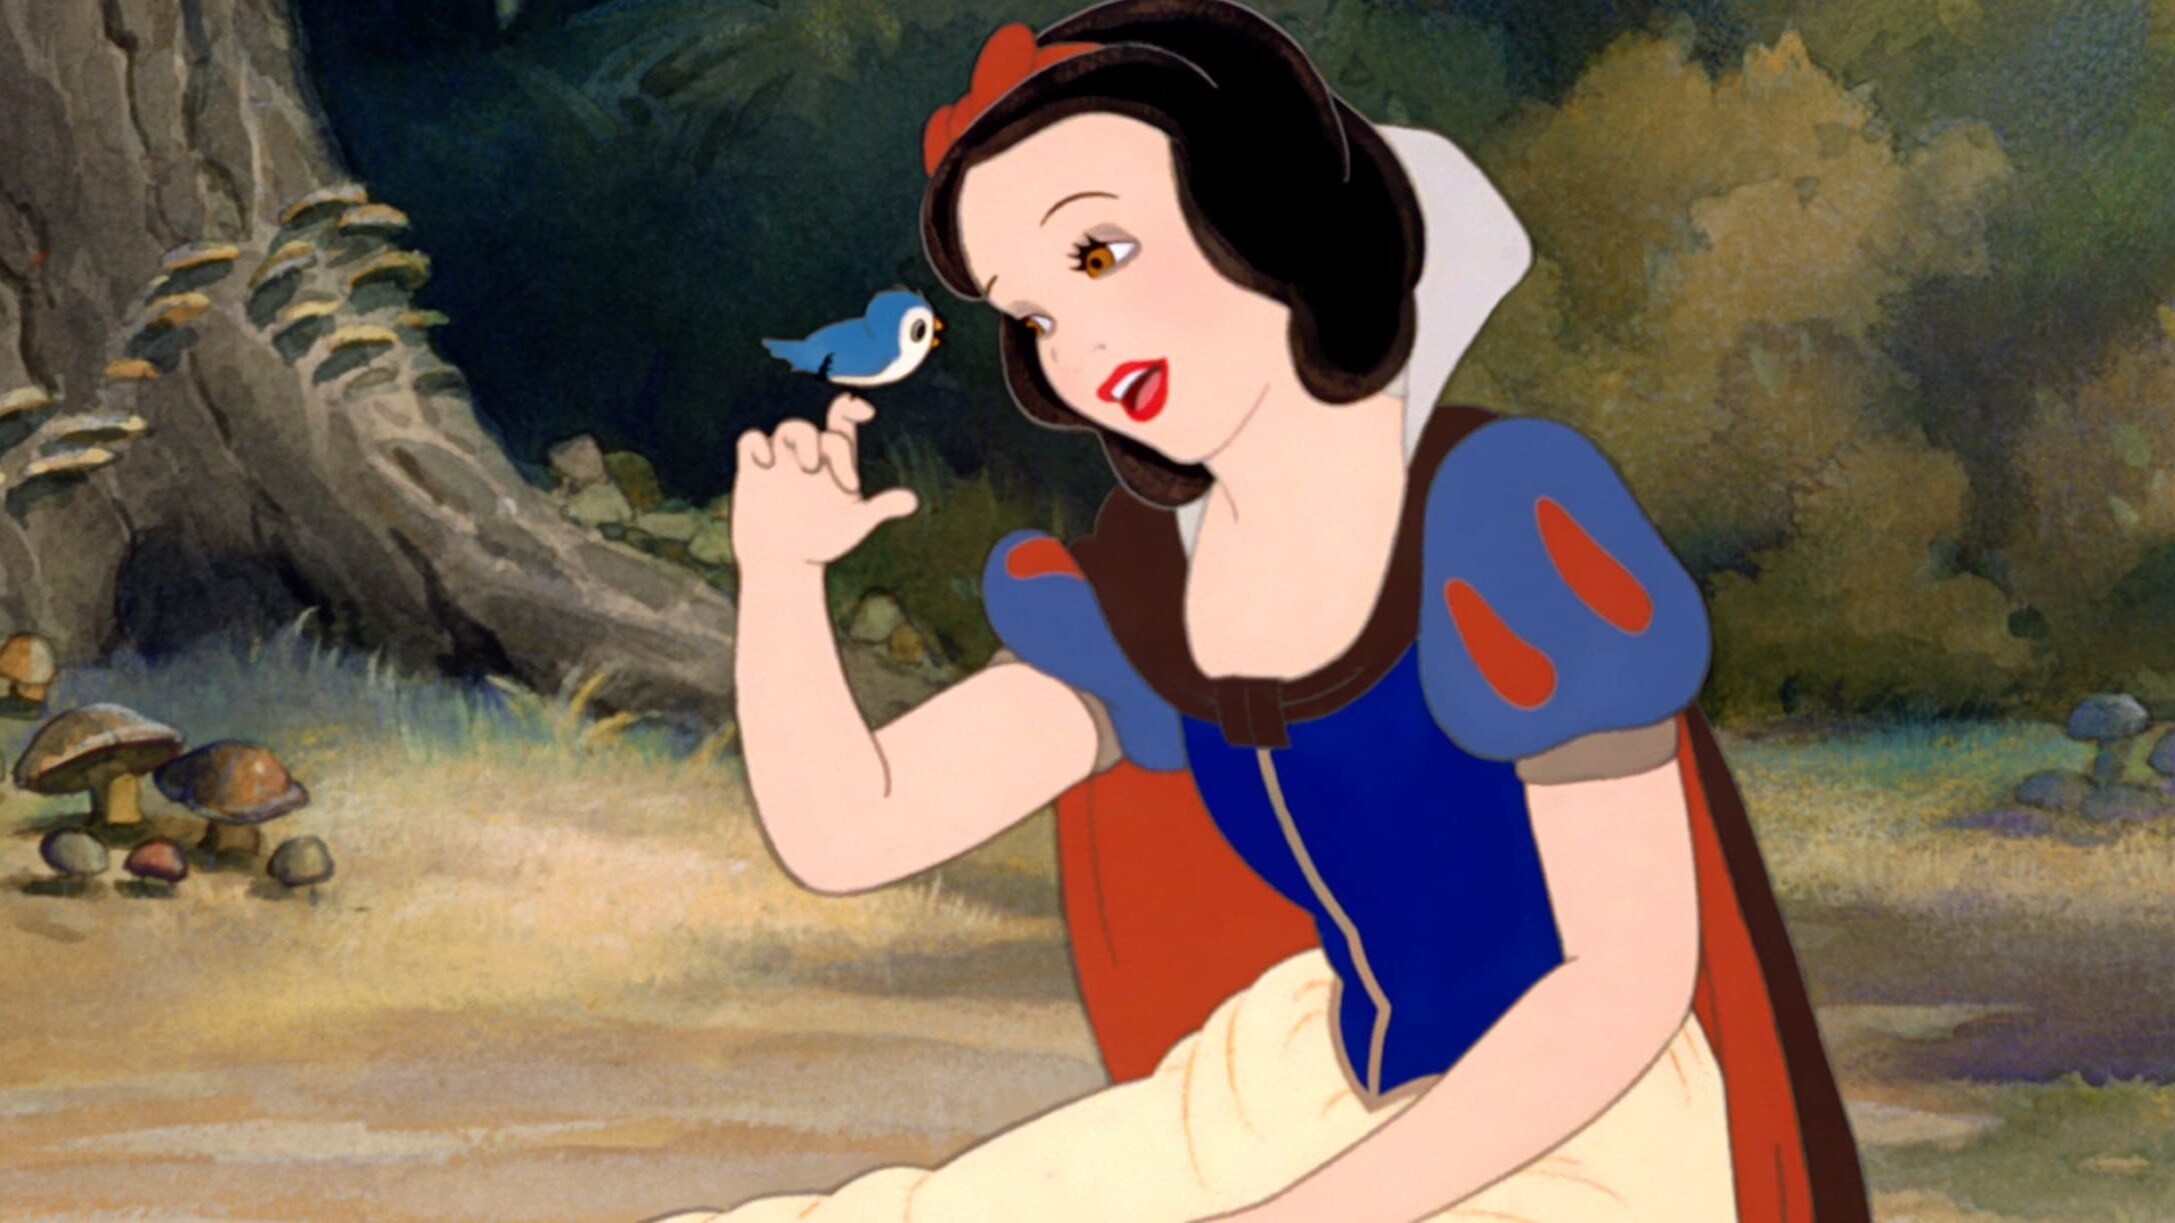 La increíble historia detrás de Blanca Nieves, la primera película animada de Disney